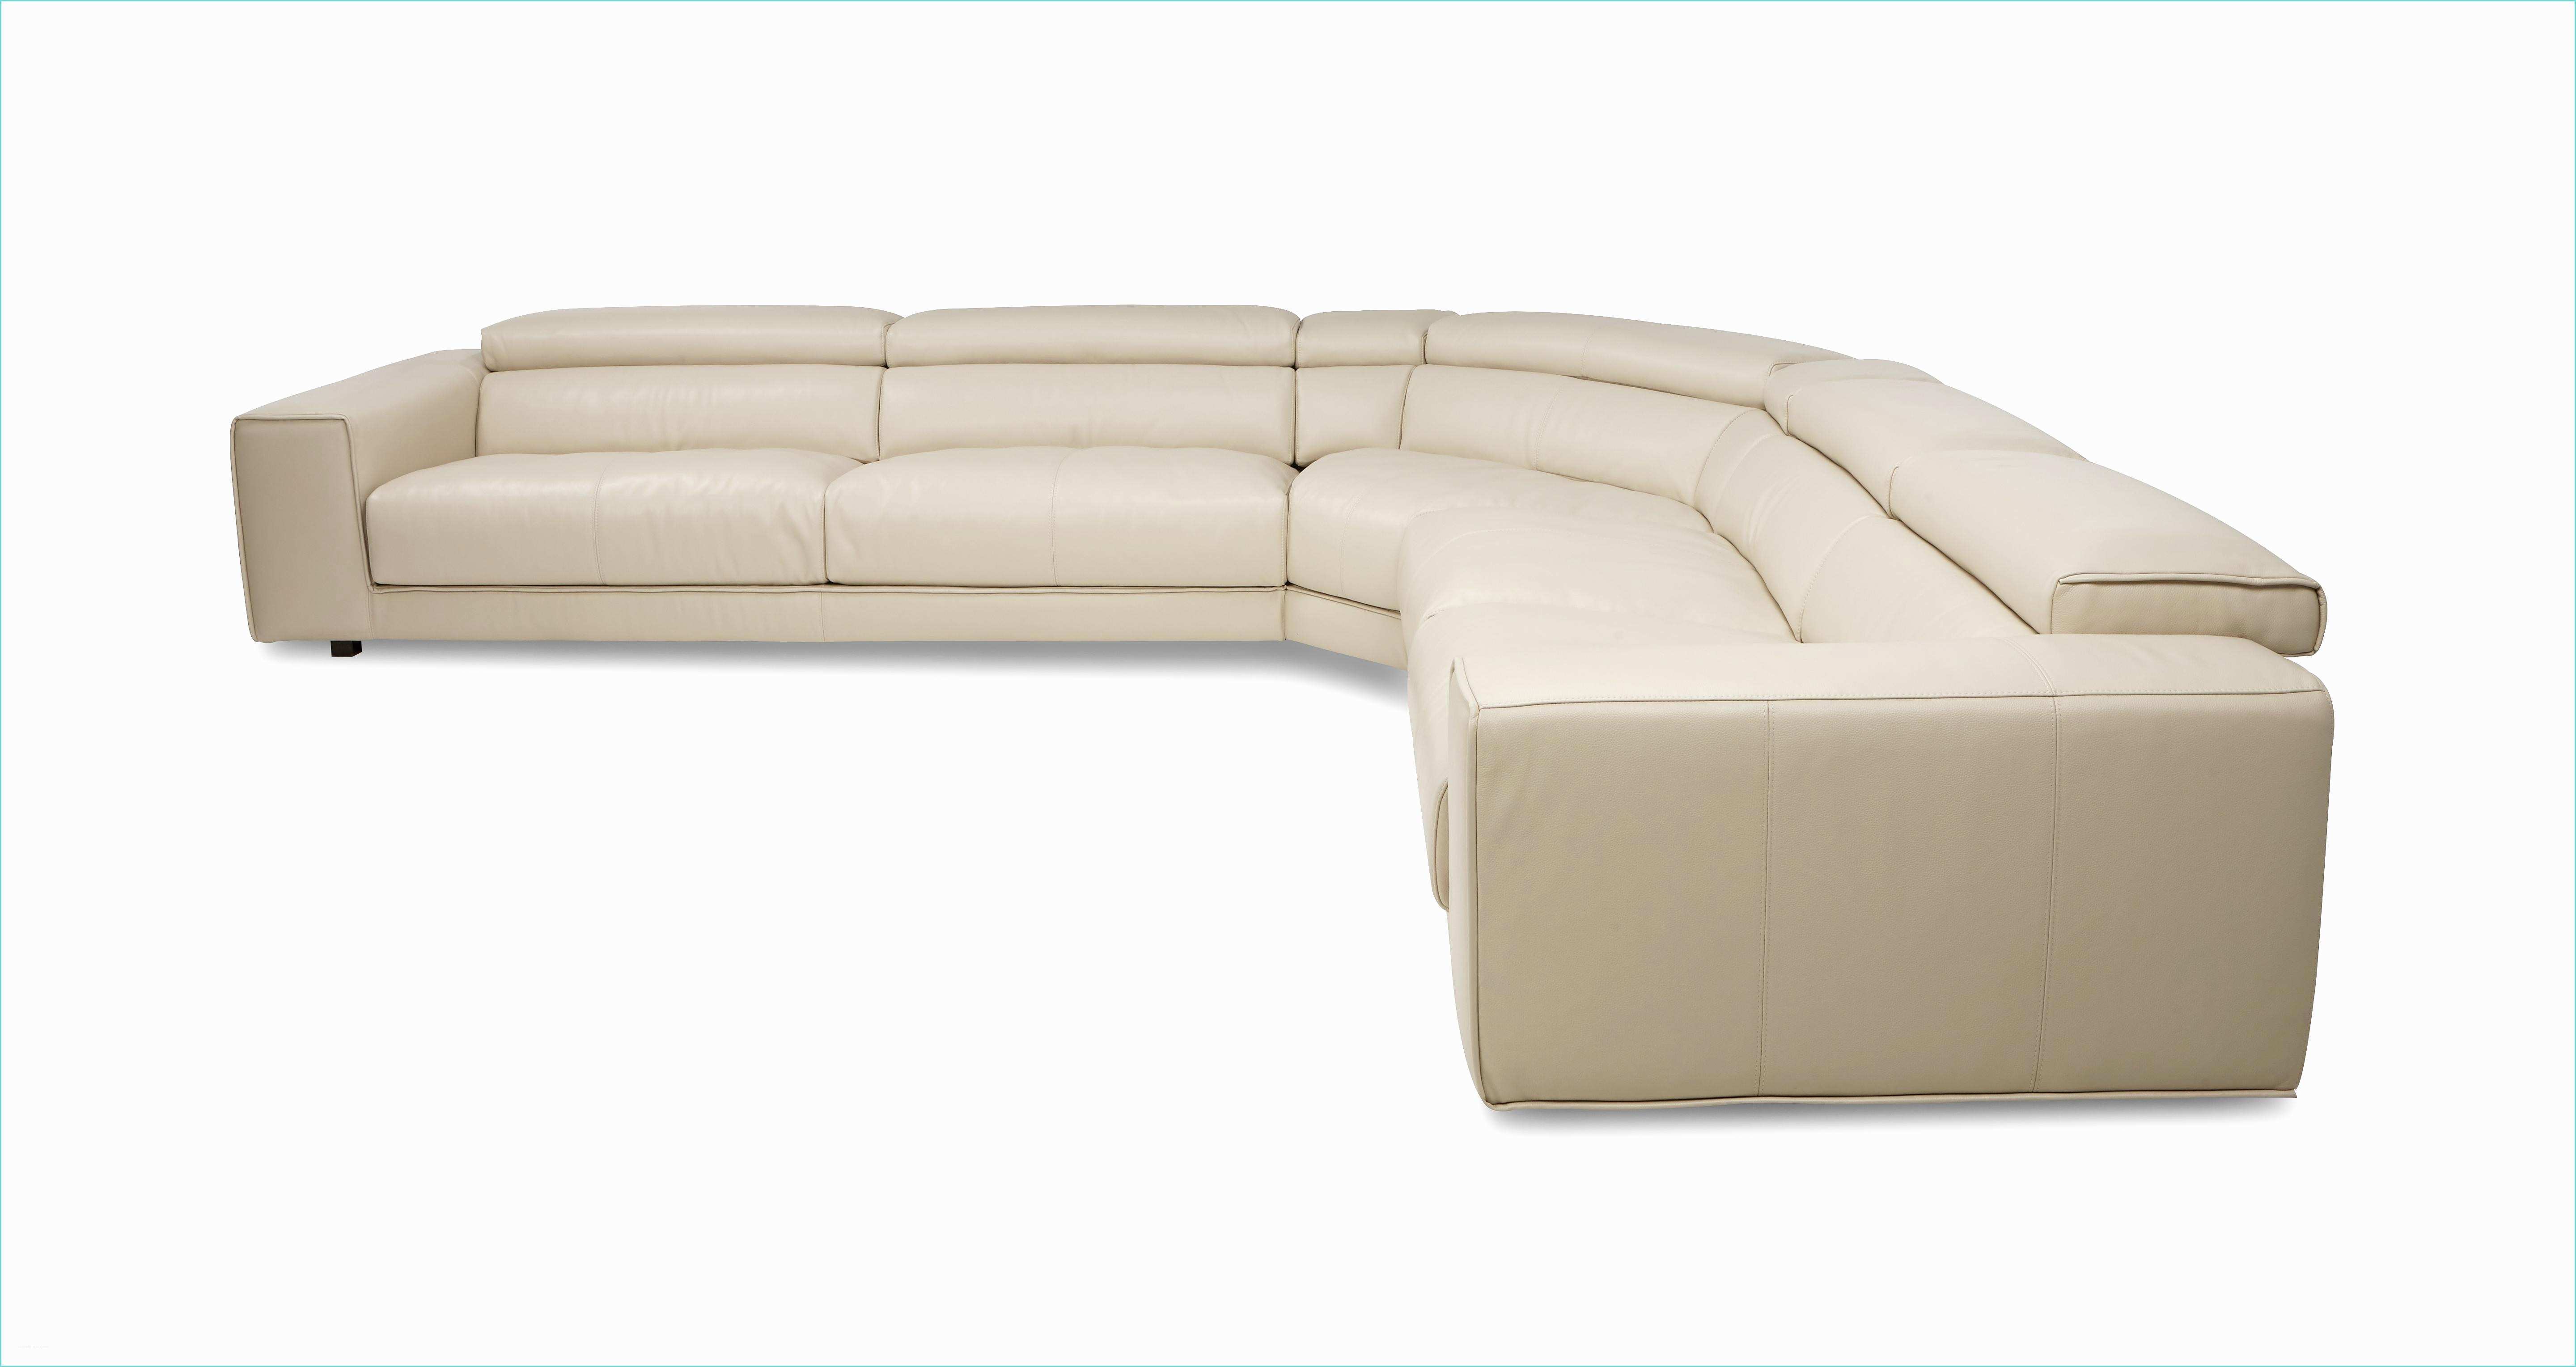 La Chaise Longue Villeneuve D ascq Great Spiatzo Option D Right Facing Seat Corner sofa